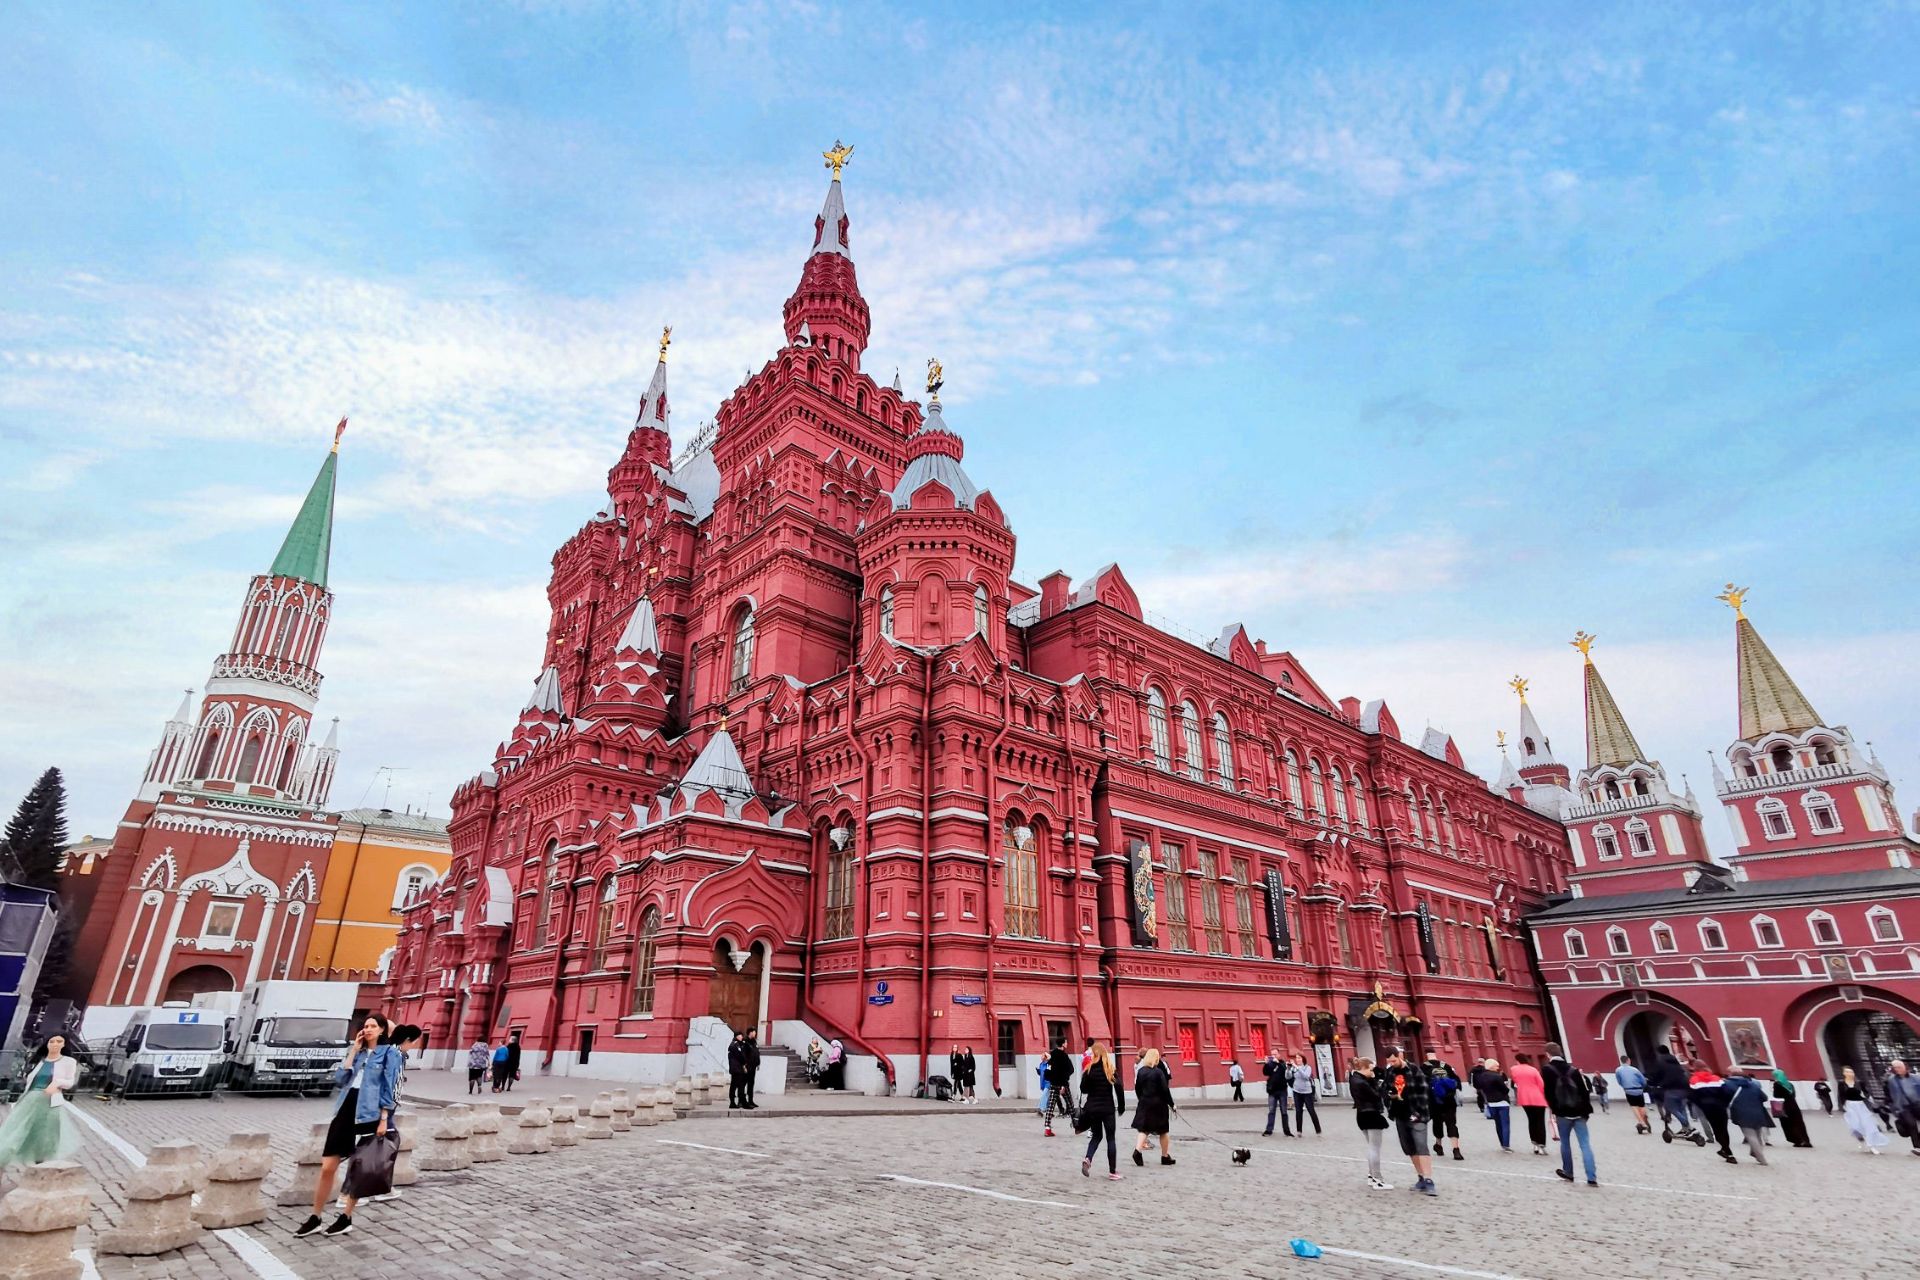 莫斯科  | 那些令我震撼的魔幻主义建筑  🏛这个夏天最开心的事情就是带妈妈去俄罗斯旅行，满足了妈妈